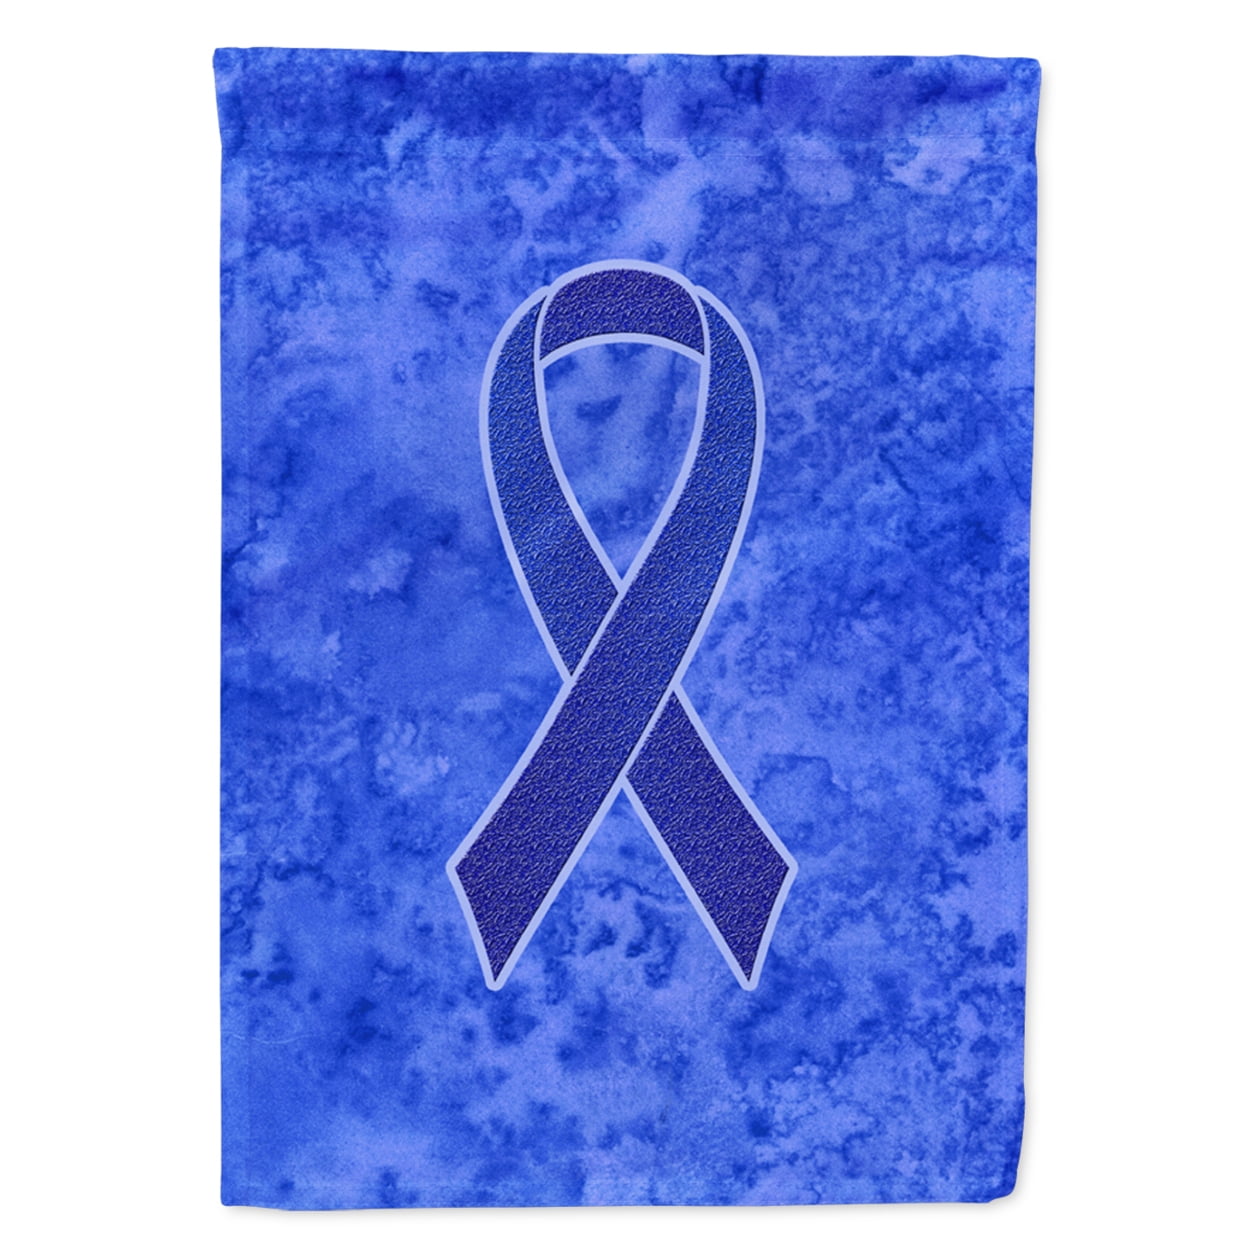 Buy: Light Blue Ribbon, Lymphedema & Prostate Cancer – Garden Flag